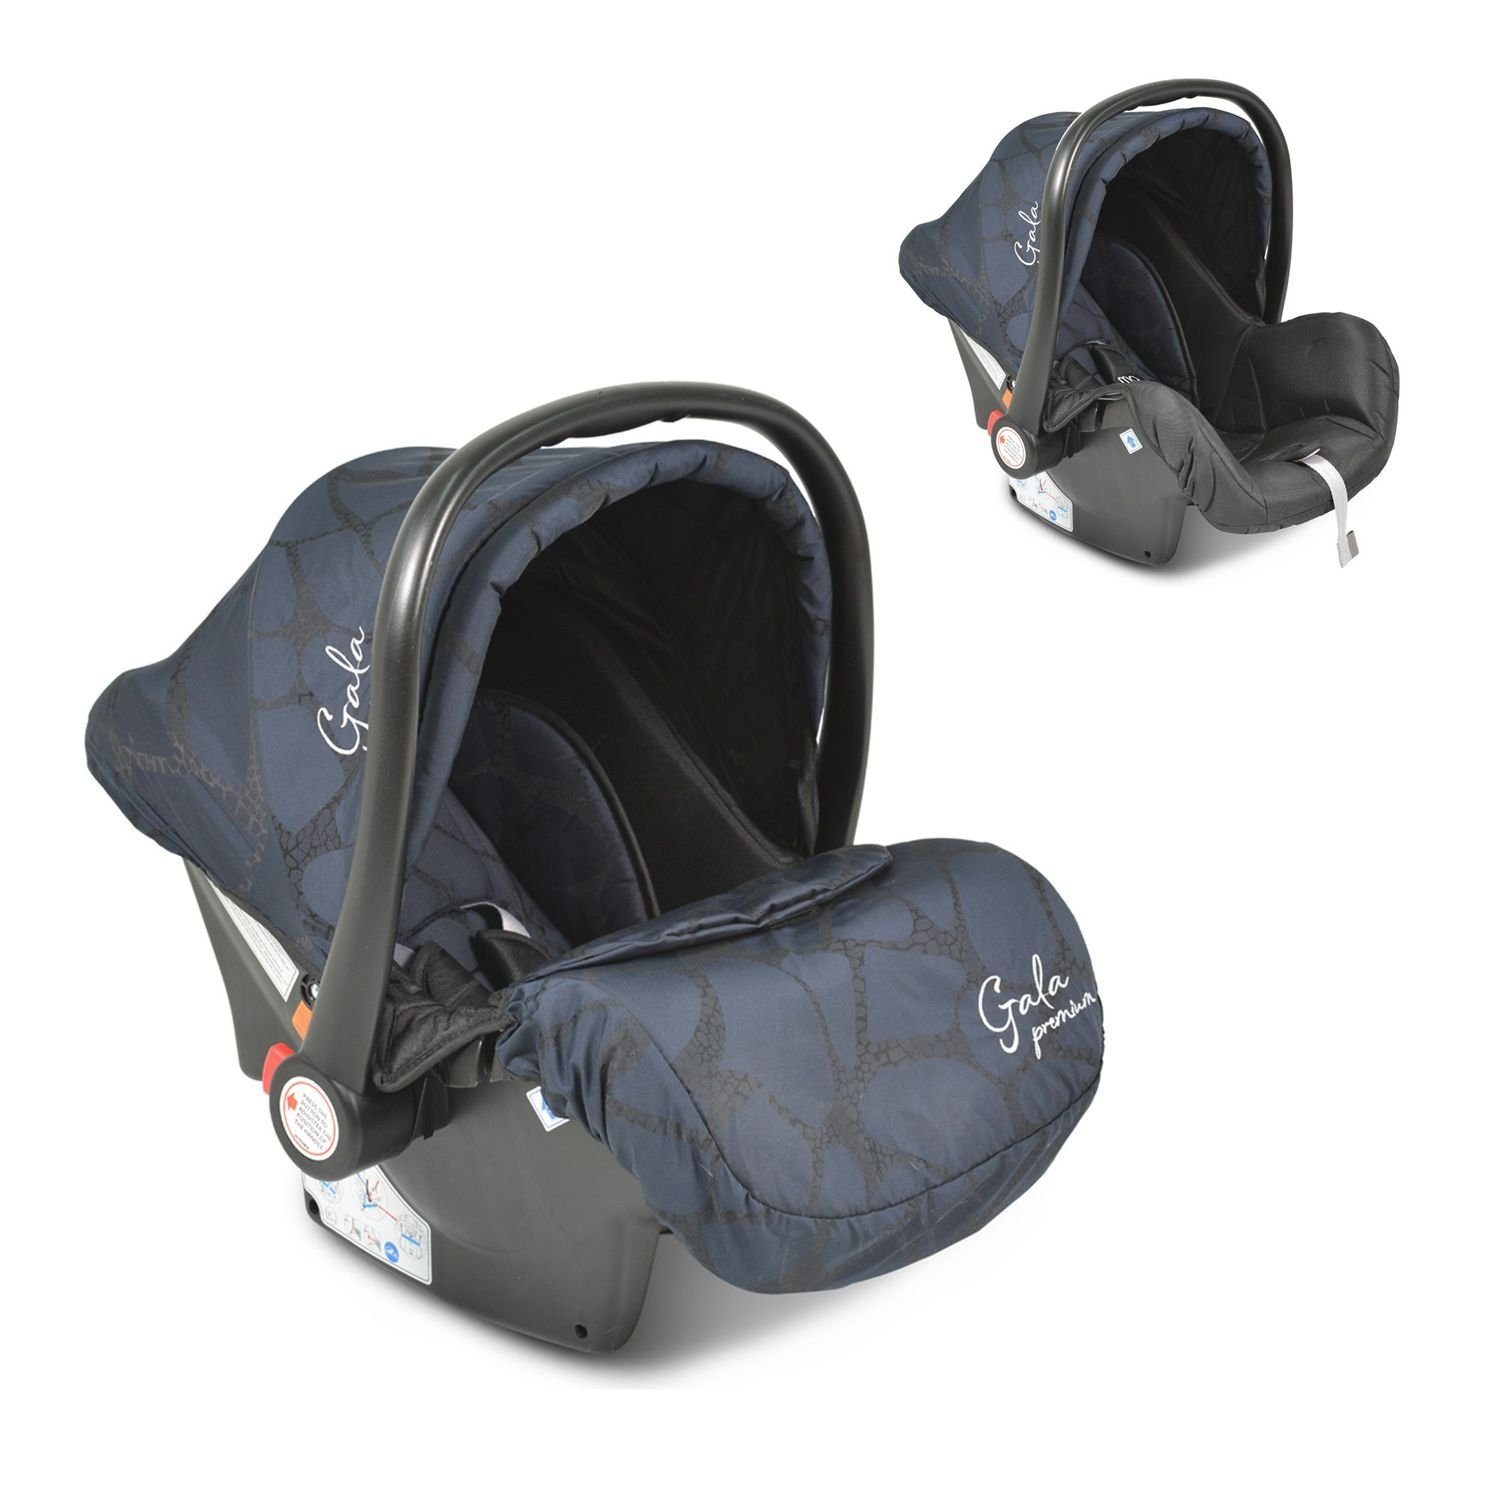 bis: kg), Moni 13 - Premium, Sitzpolster kg, Fußabdeckung, Babyschale (0 13 Babyschale blau Gruppe 0+, Gala